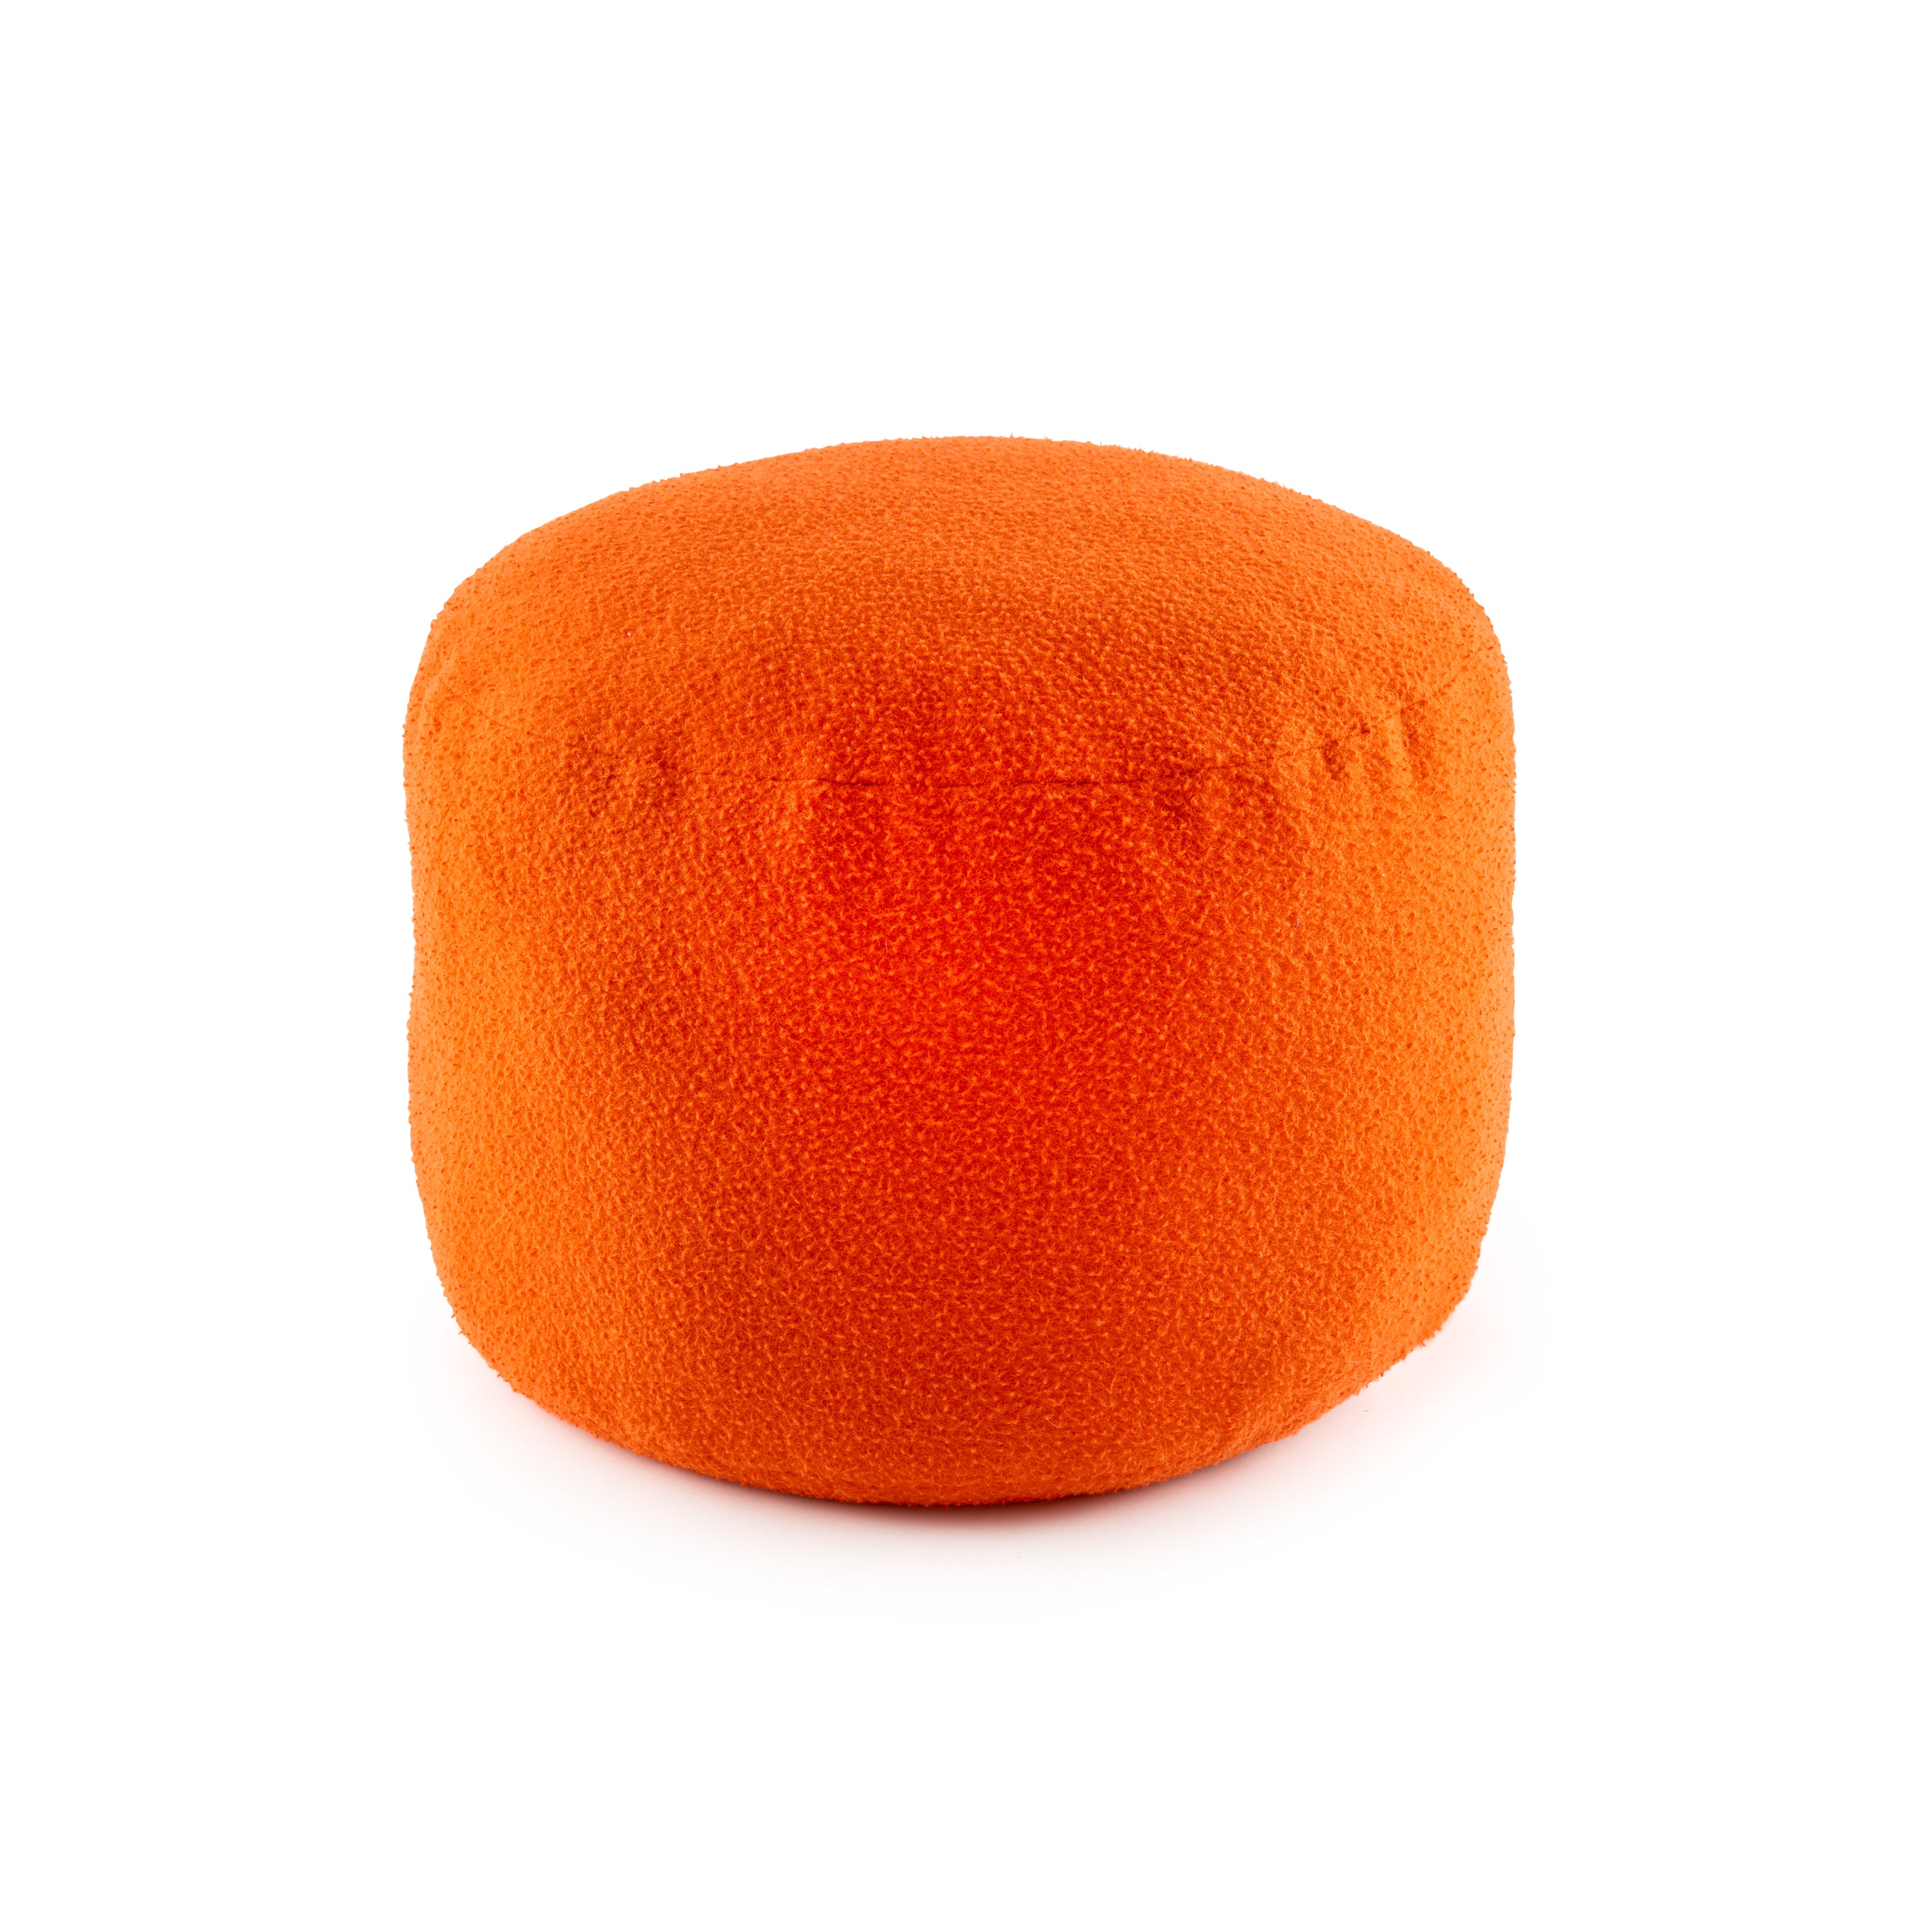 Casentino Round Ottoman in 'That Orange'